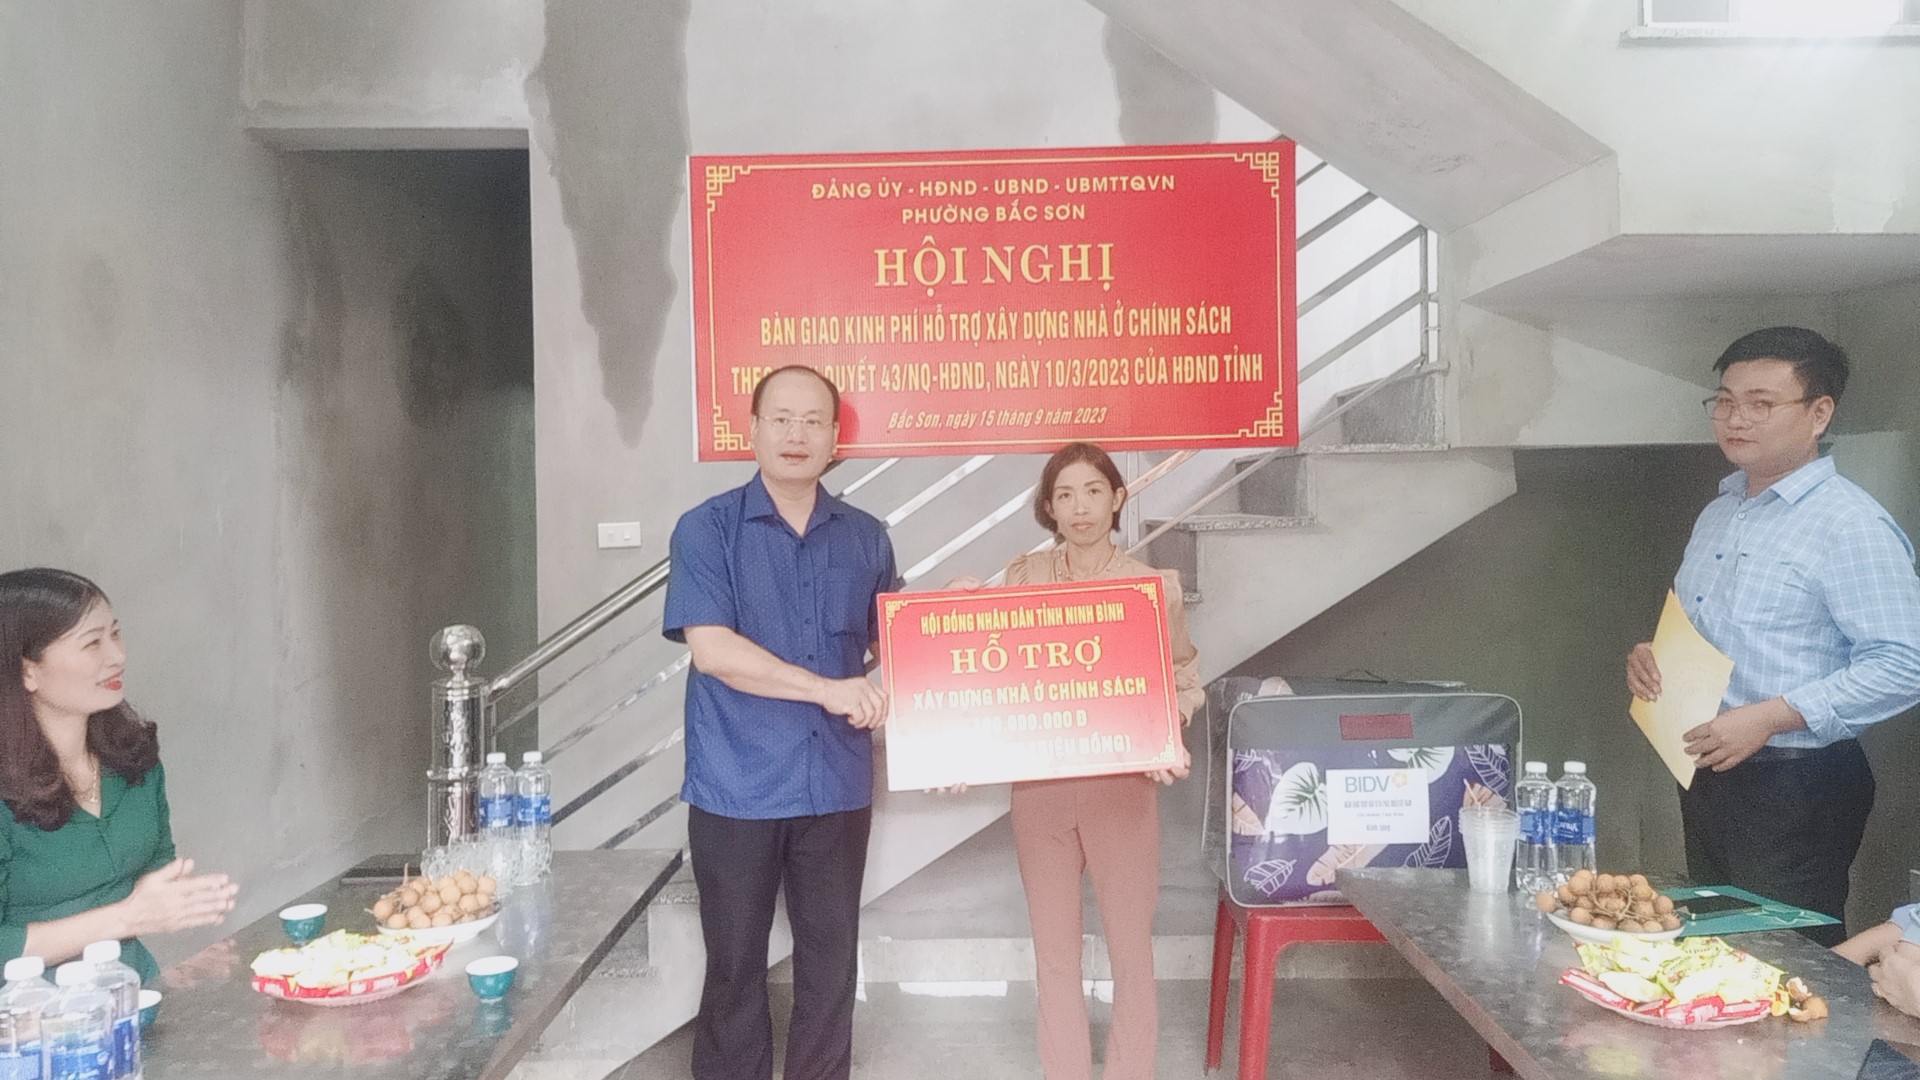 Phường Bắc Sơn tổ chức Hội nghị bàn giao kinh phí hỗ trợ xây dựng nhà ở chính sách theo NQ 43 của HĐND tỉnh